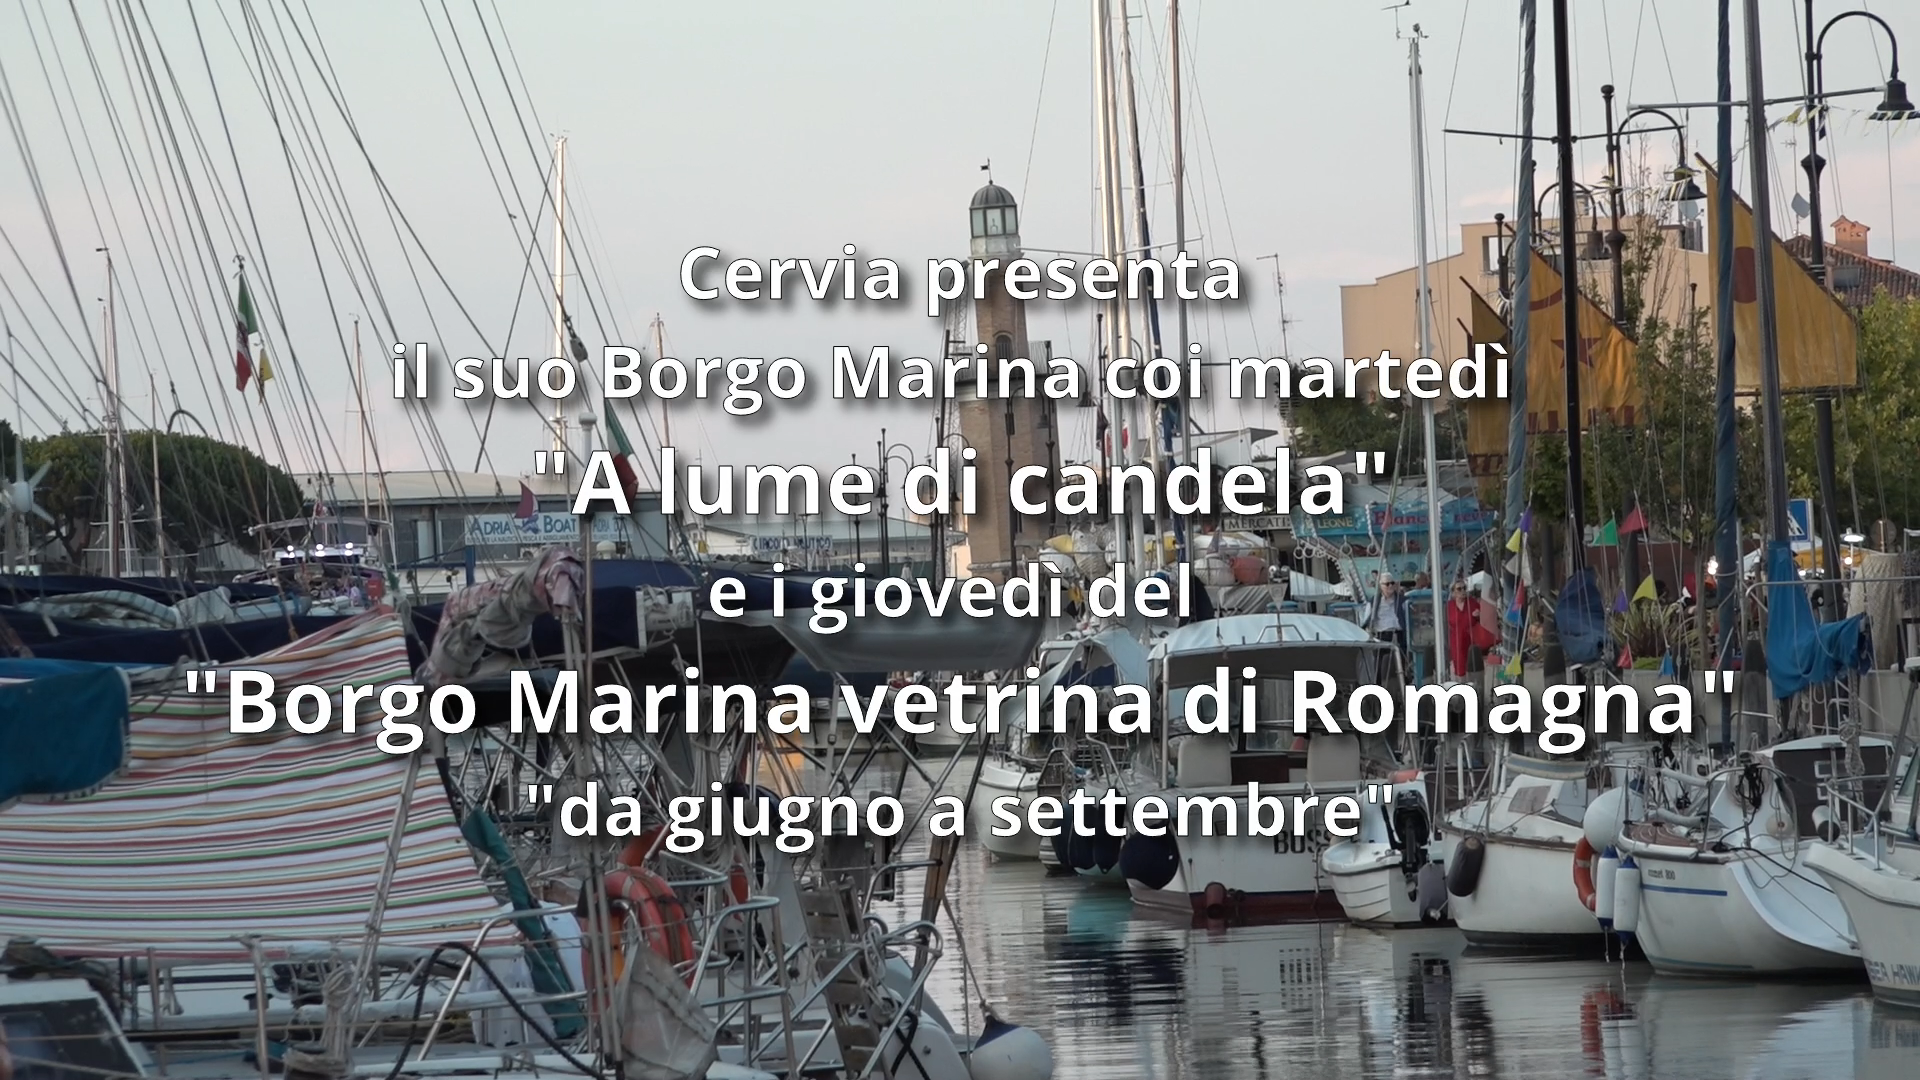 Borgo Marina: “Vetrina di Romagna” , “Cervia a lume di candela” e Mostra D-ARS-EN-ART